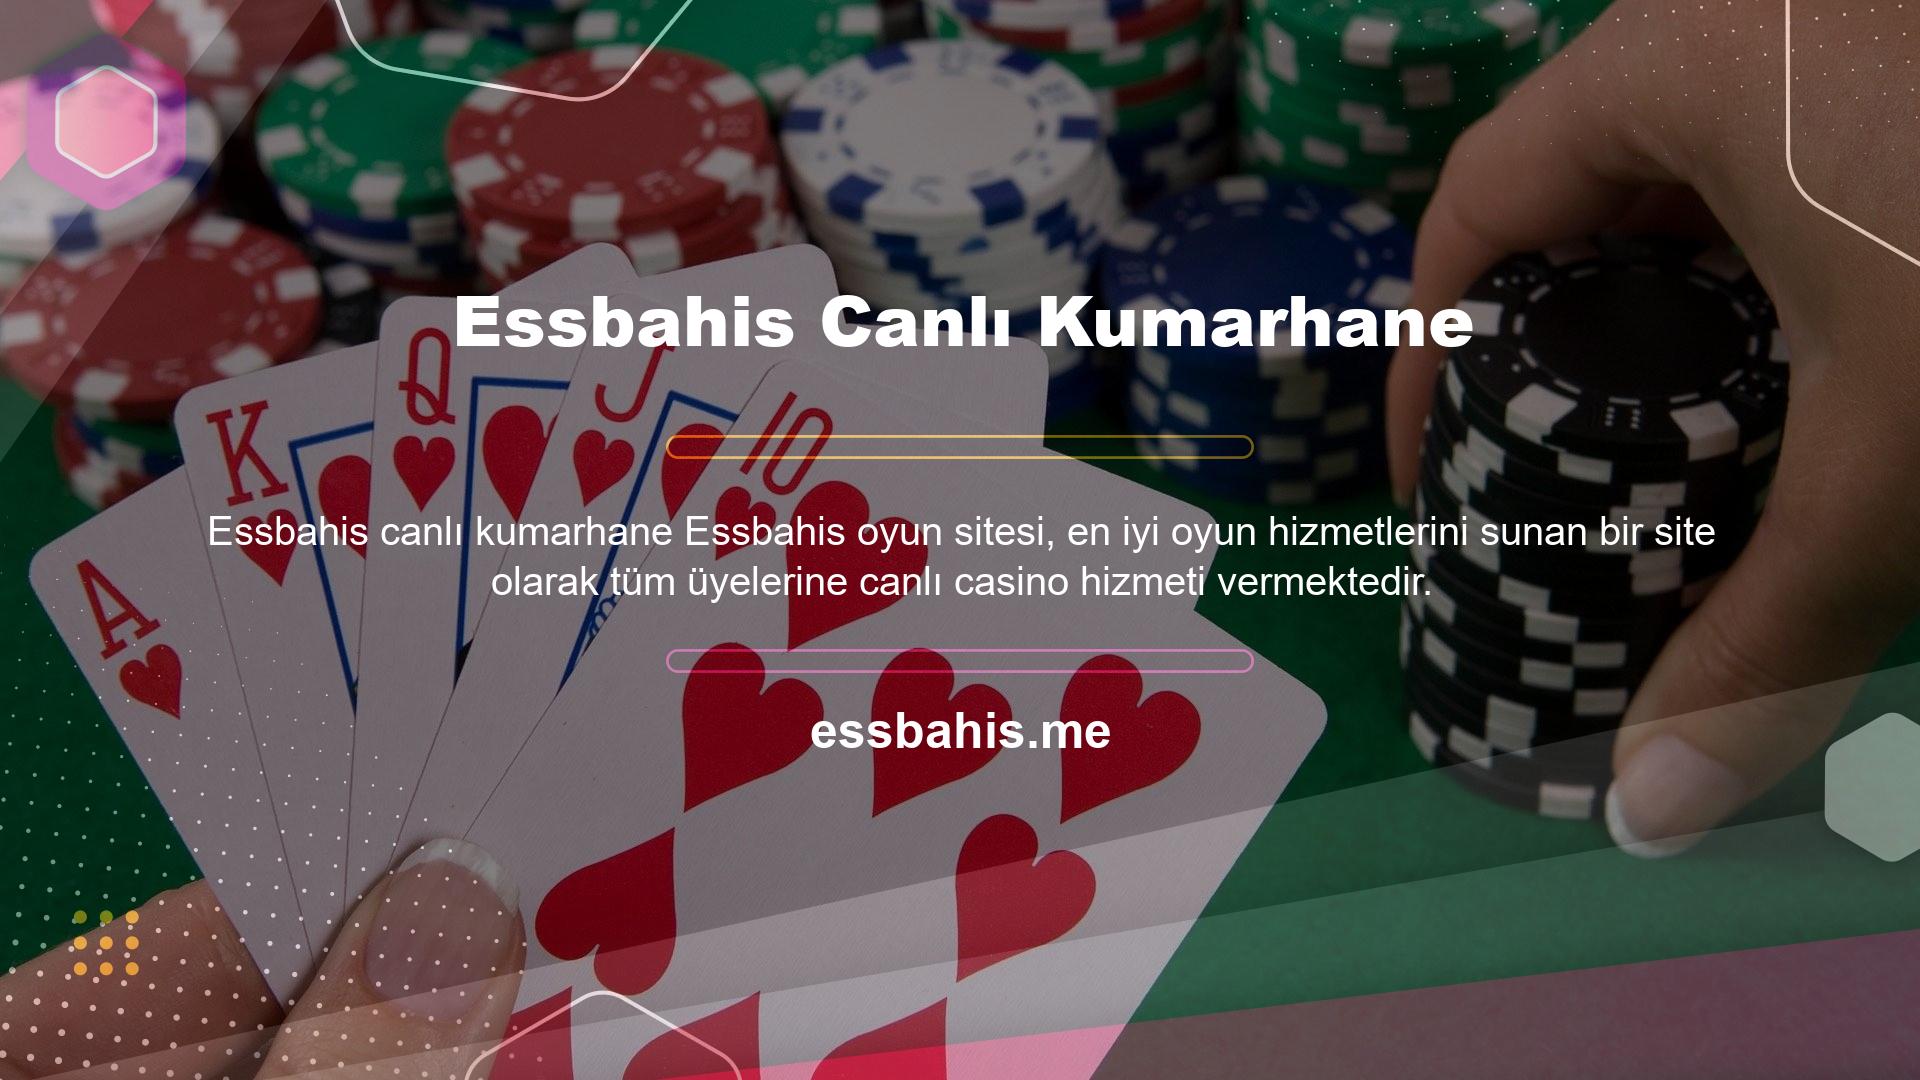 Essbahis, canlı casino oyun hizmeti için farklı oyun sağlayıcı seçeneklerini kullanmaktadır